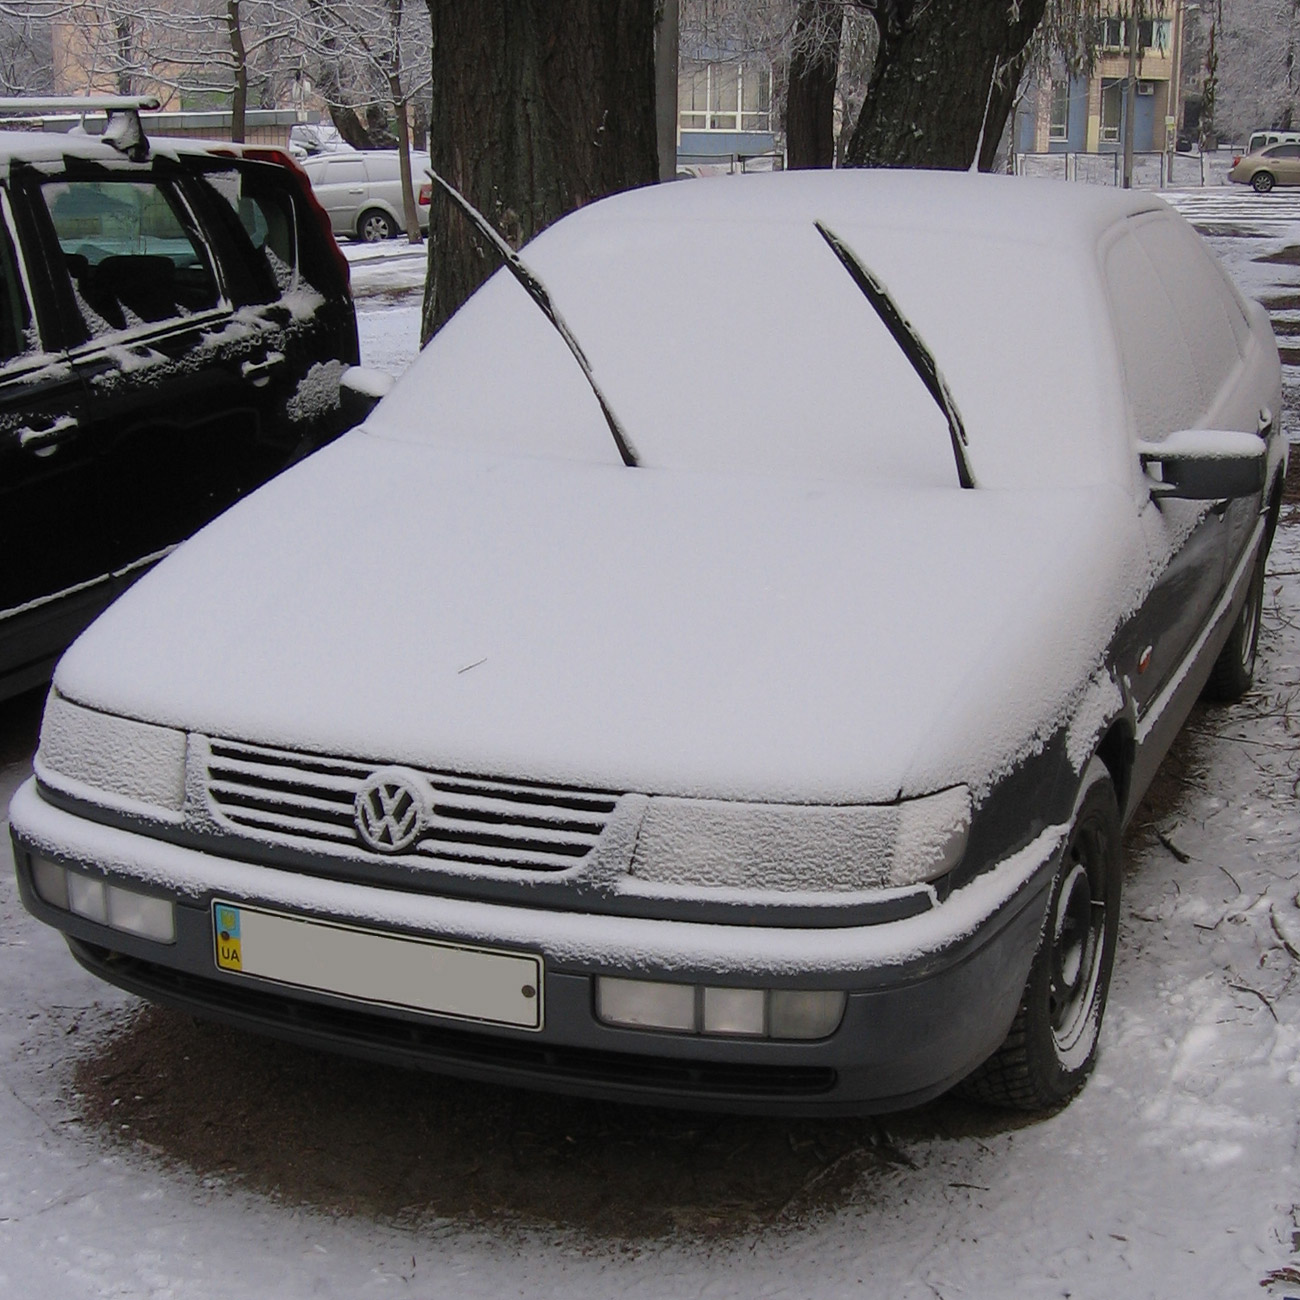 snow on car